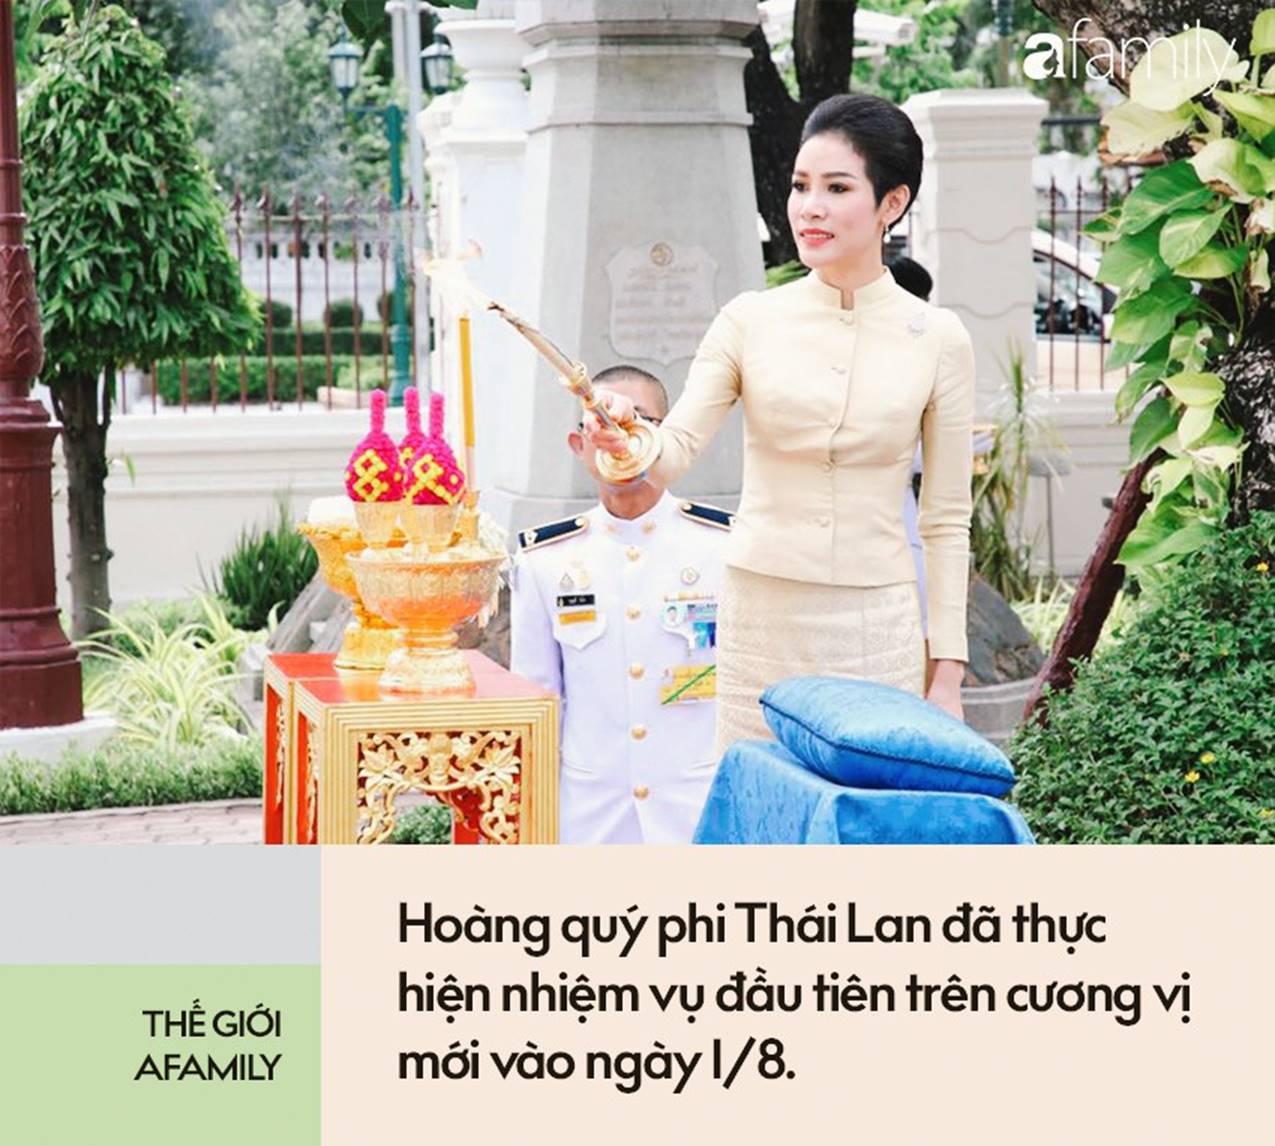 Hoàng quý phi Thái Lan thực hiện nhiệm vụ hoàng gia đầu tiên trên cương vị mới với phong thái gây ngỡ ngàng-3